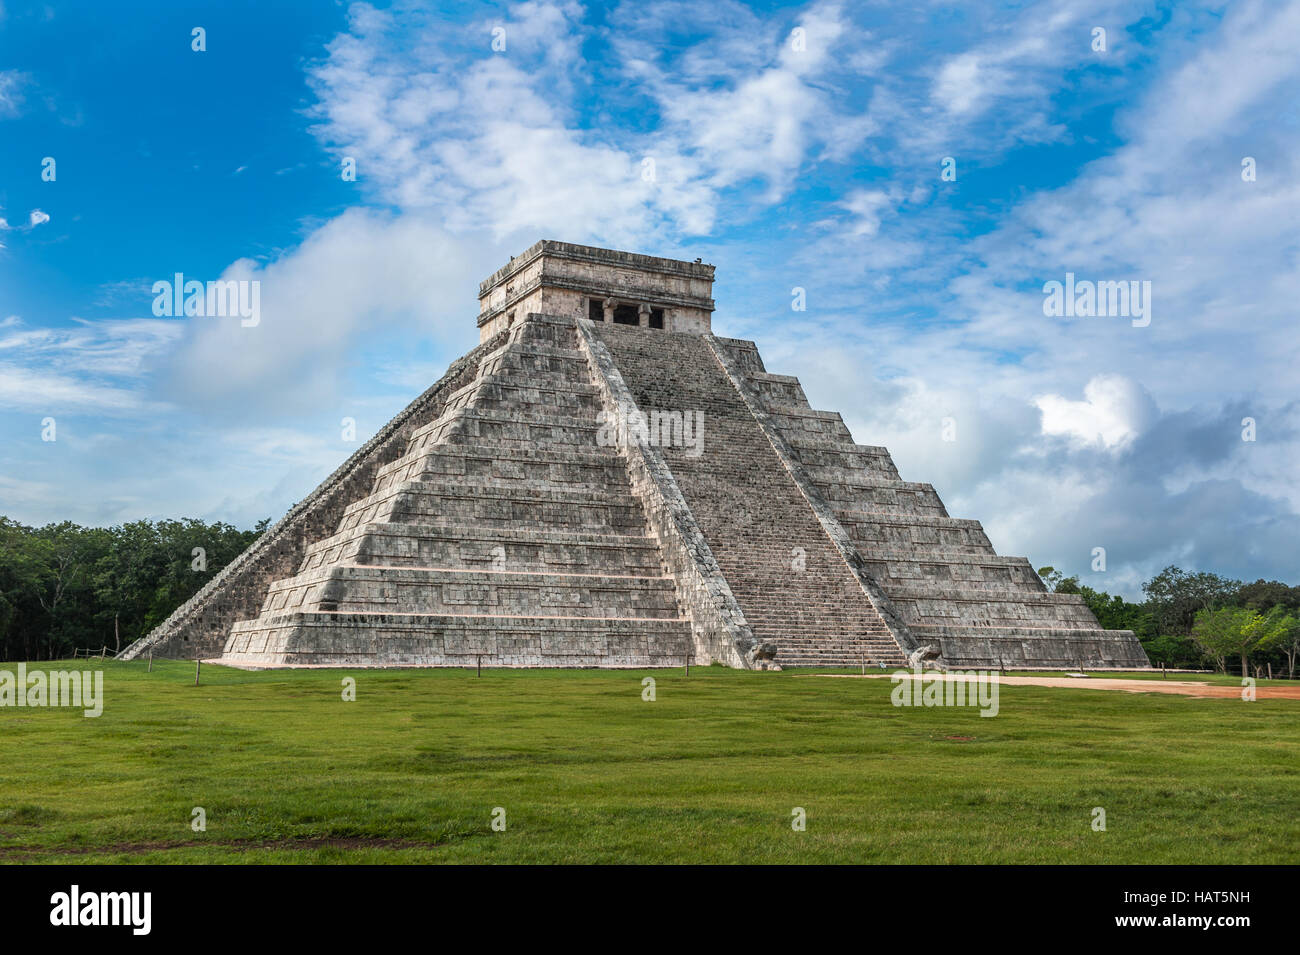 El Castillo oder Tempel der Kukulkan Pyramide, Chichen Itza, Yucatan, Mexiko Stockfoto